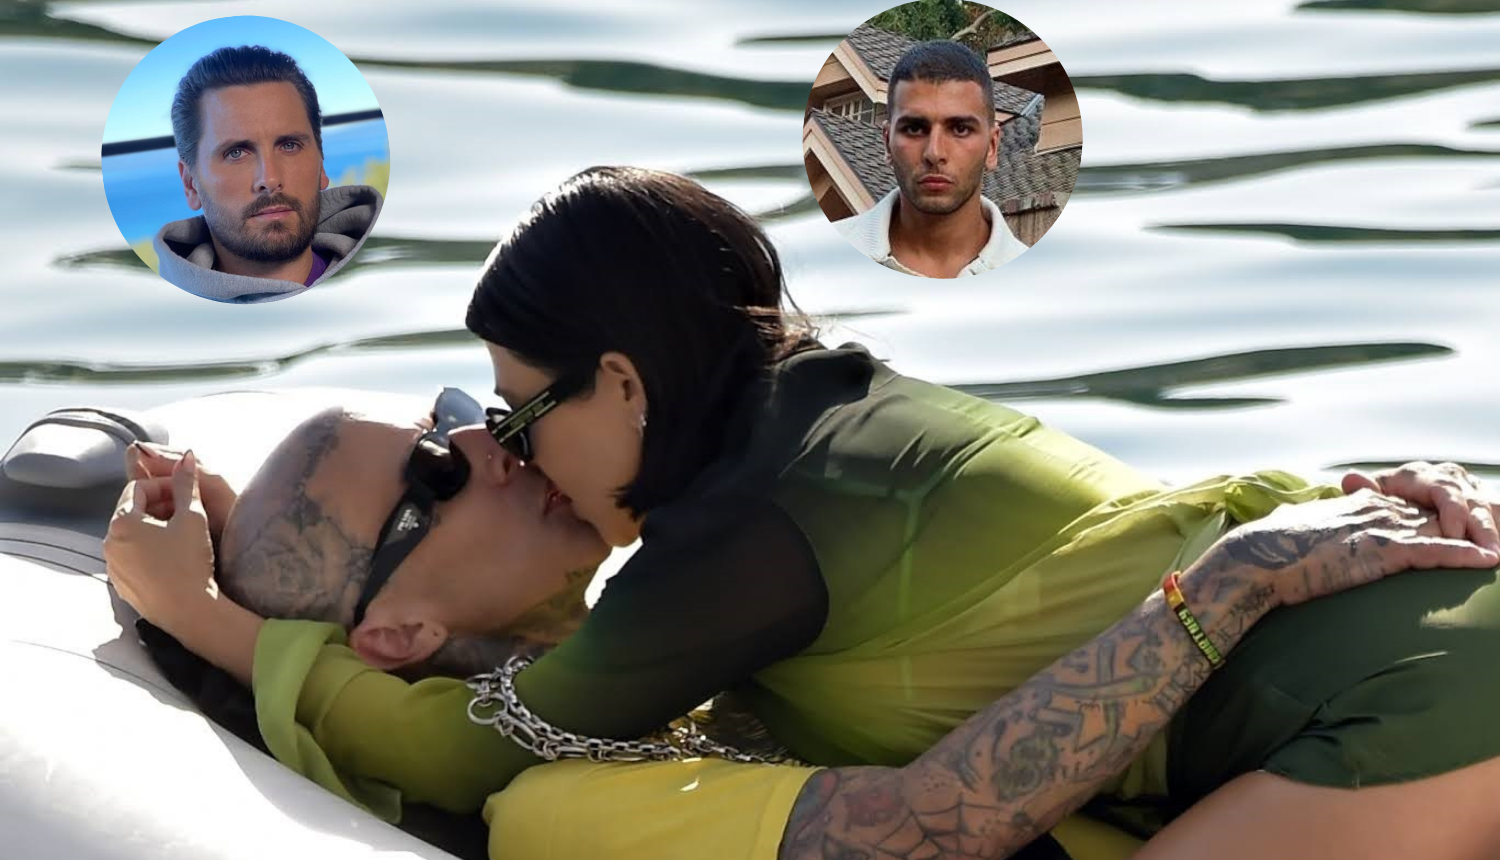 Kardashian izmjenjivala strasti s novim dečkom, bivši partneri komentirali su njene vruće fotke